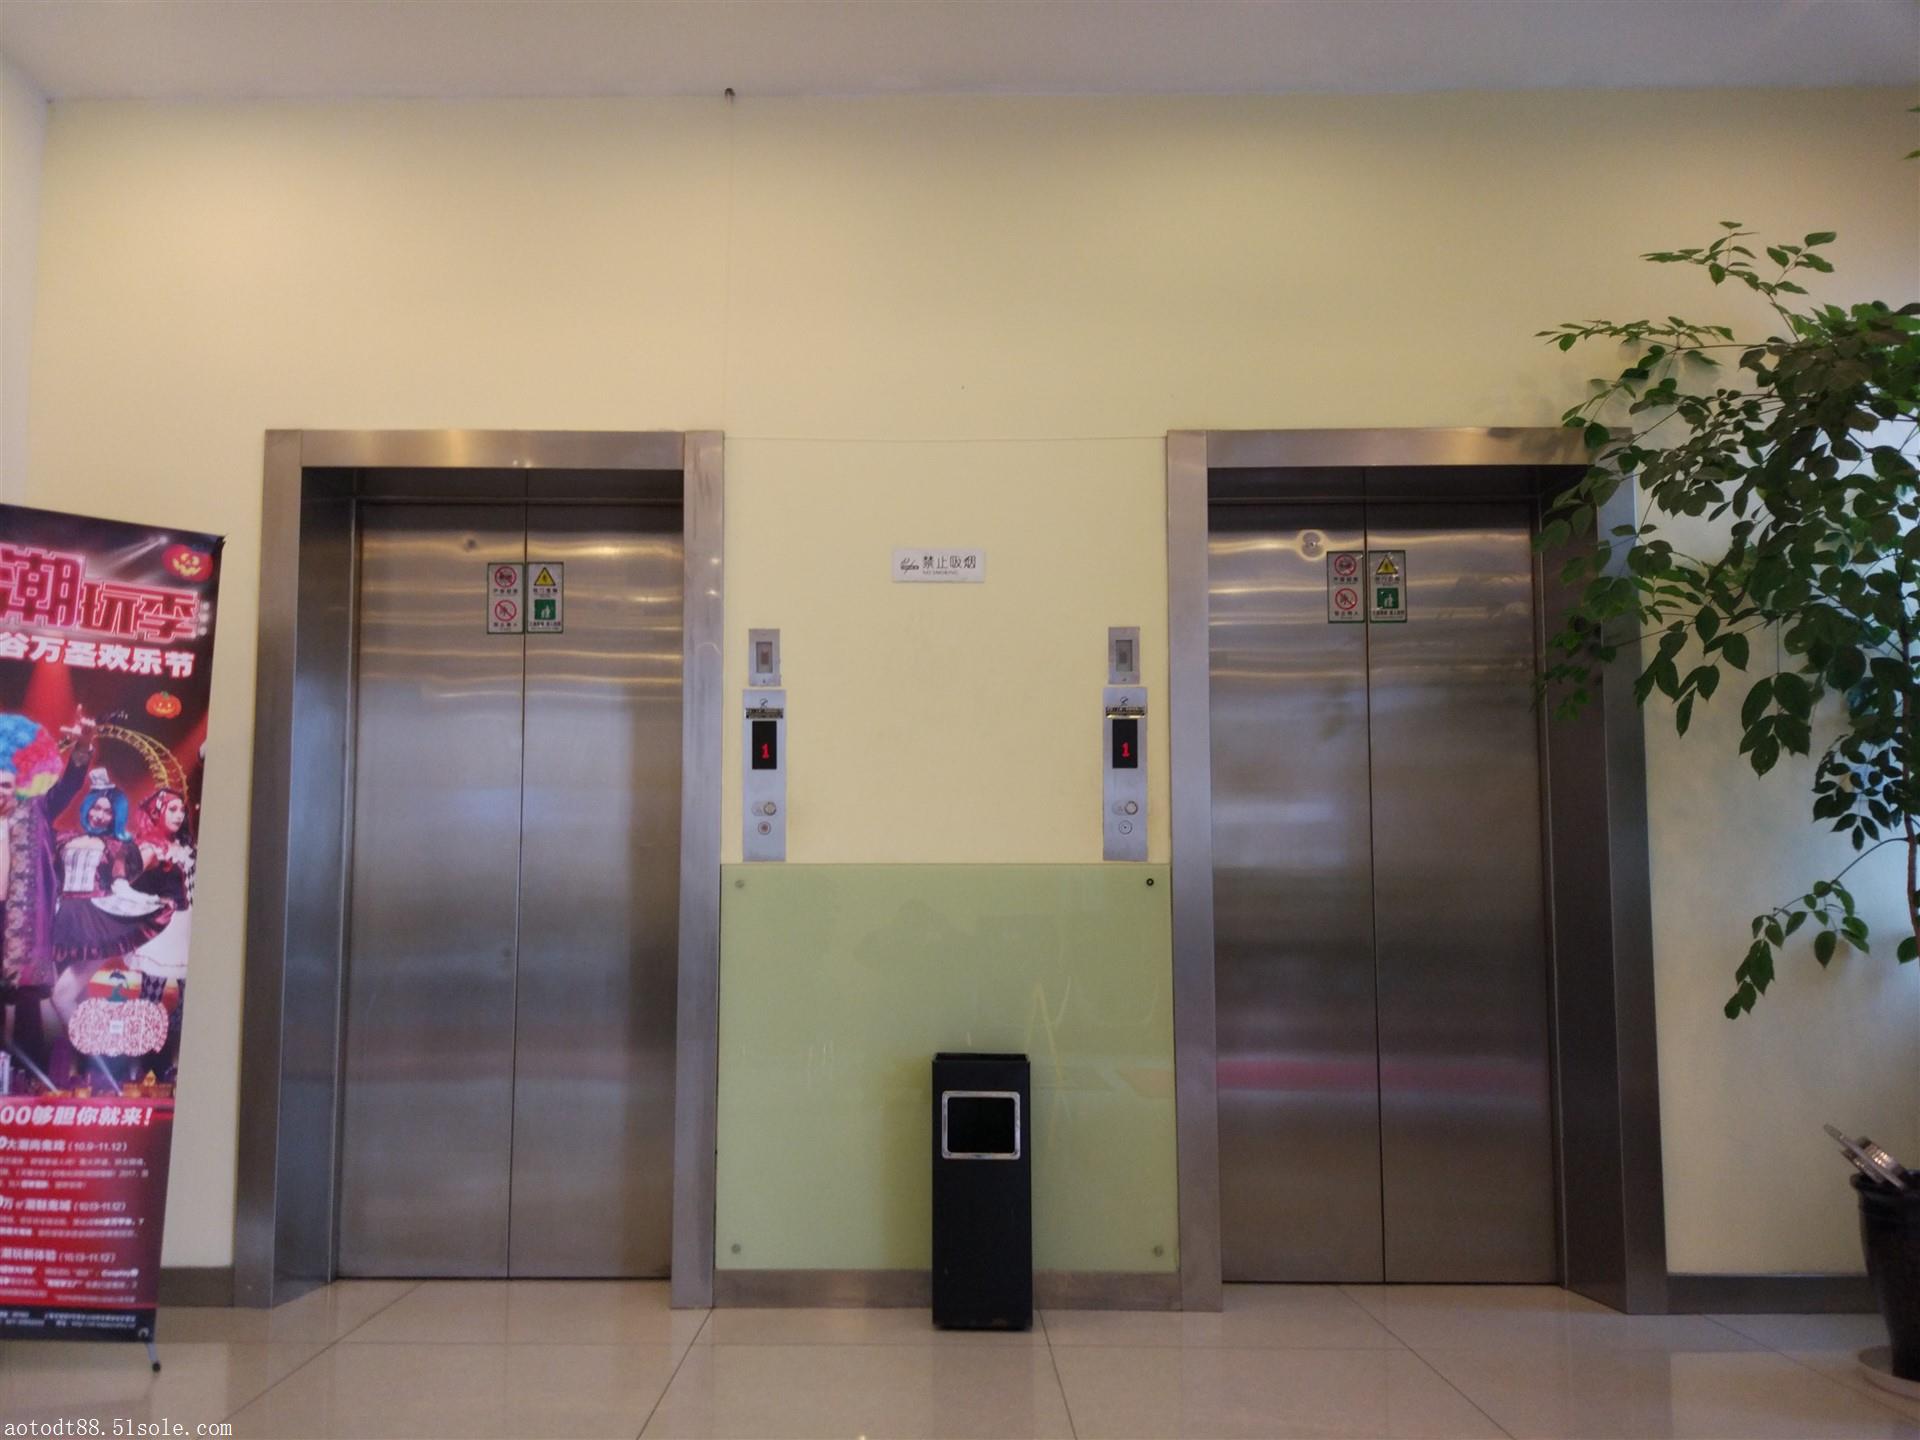 酒店乘客电梯800kg aolida无机房曳引式电梯公司